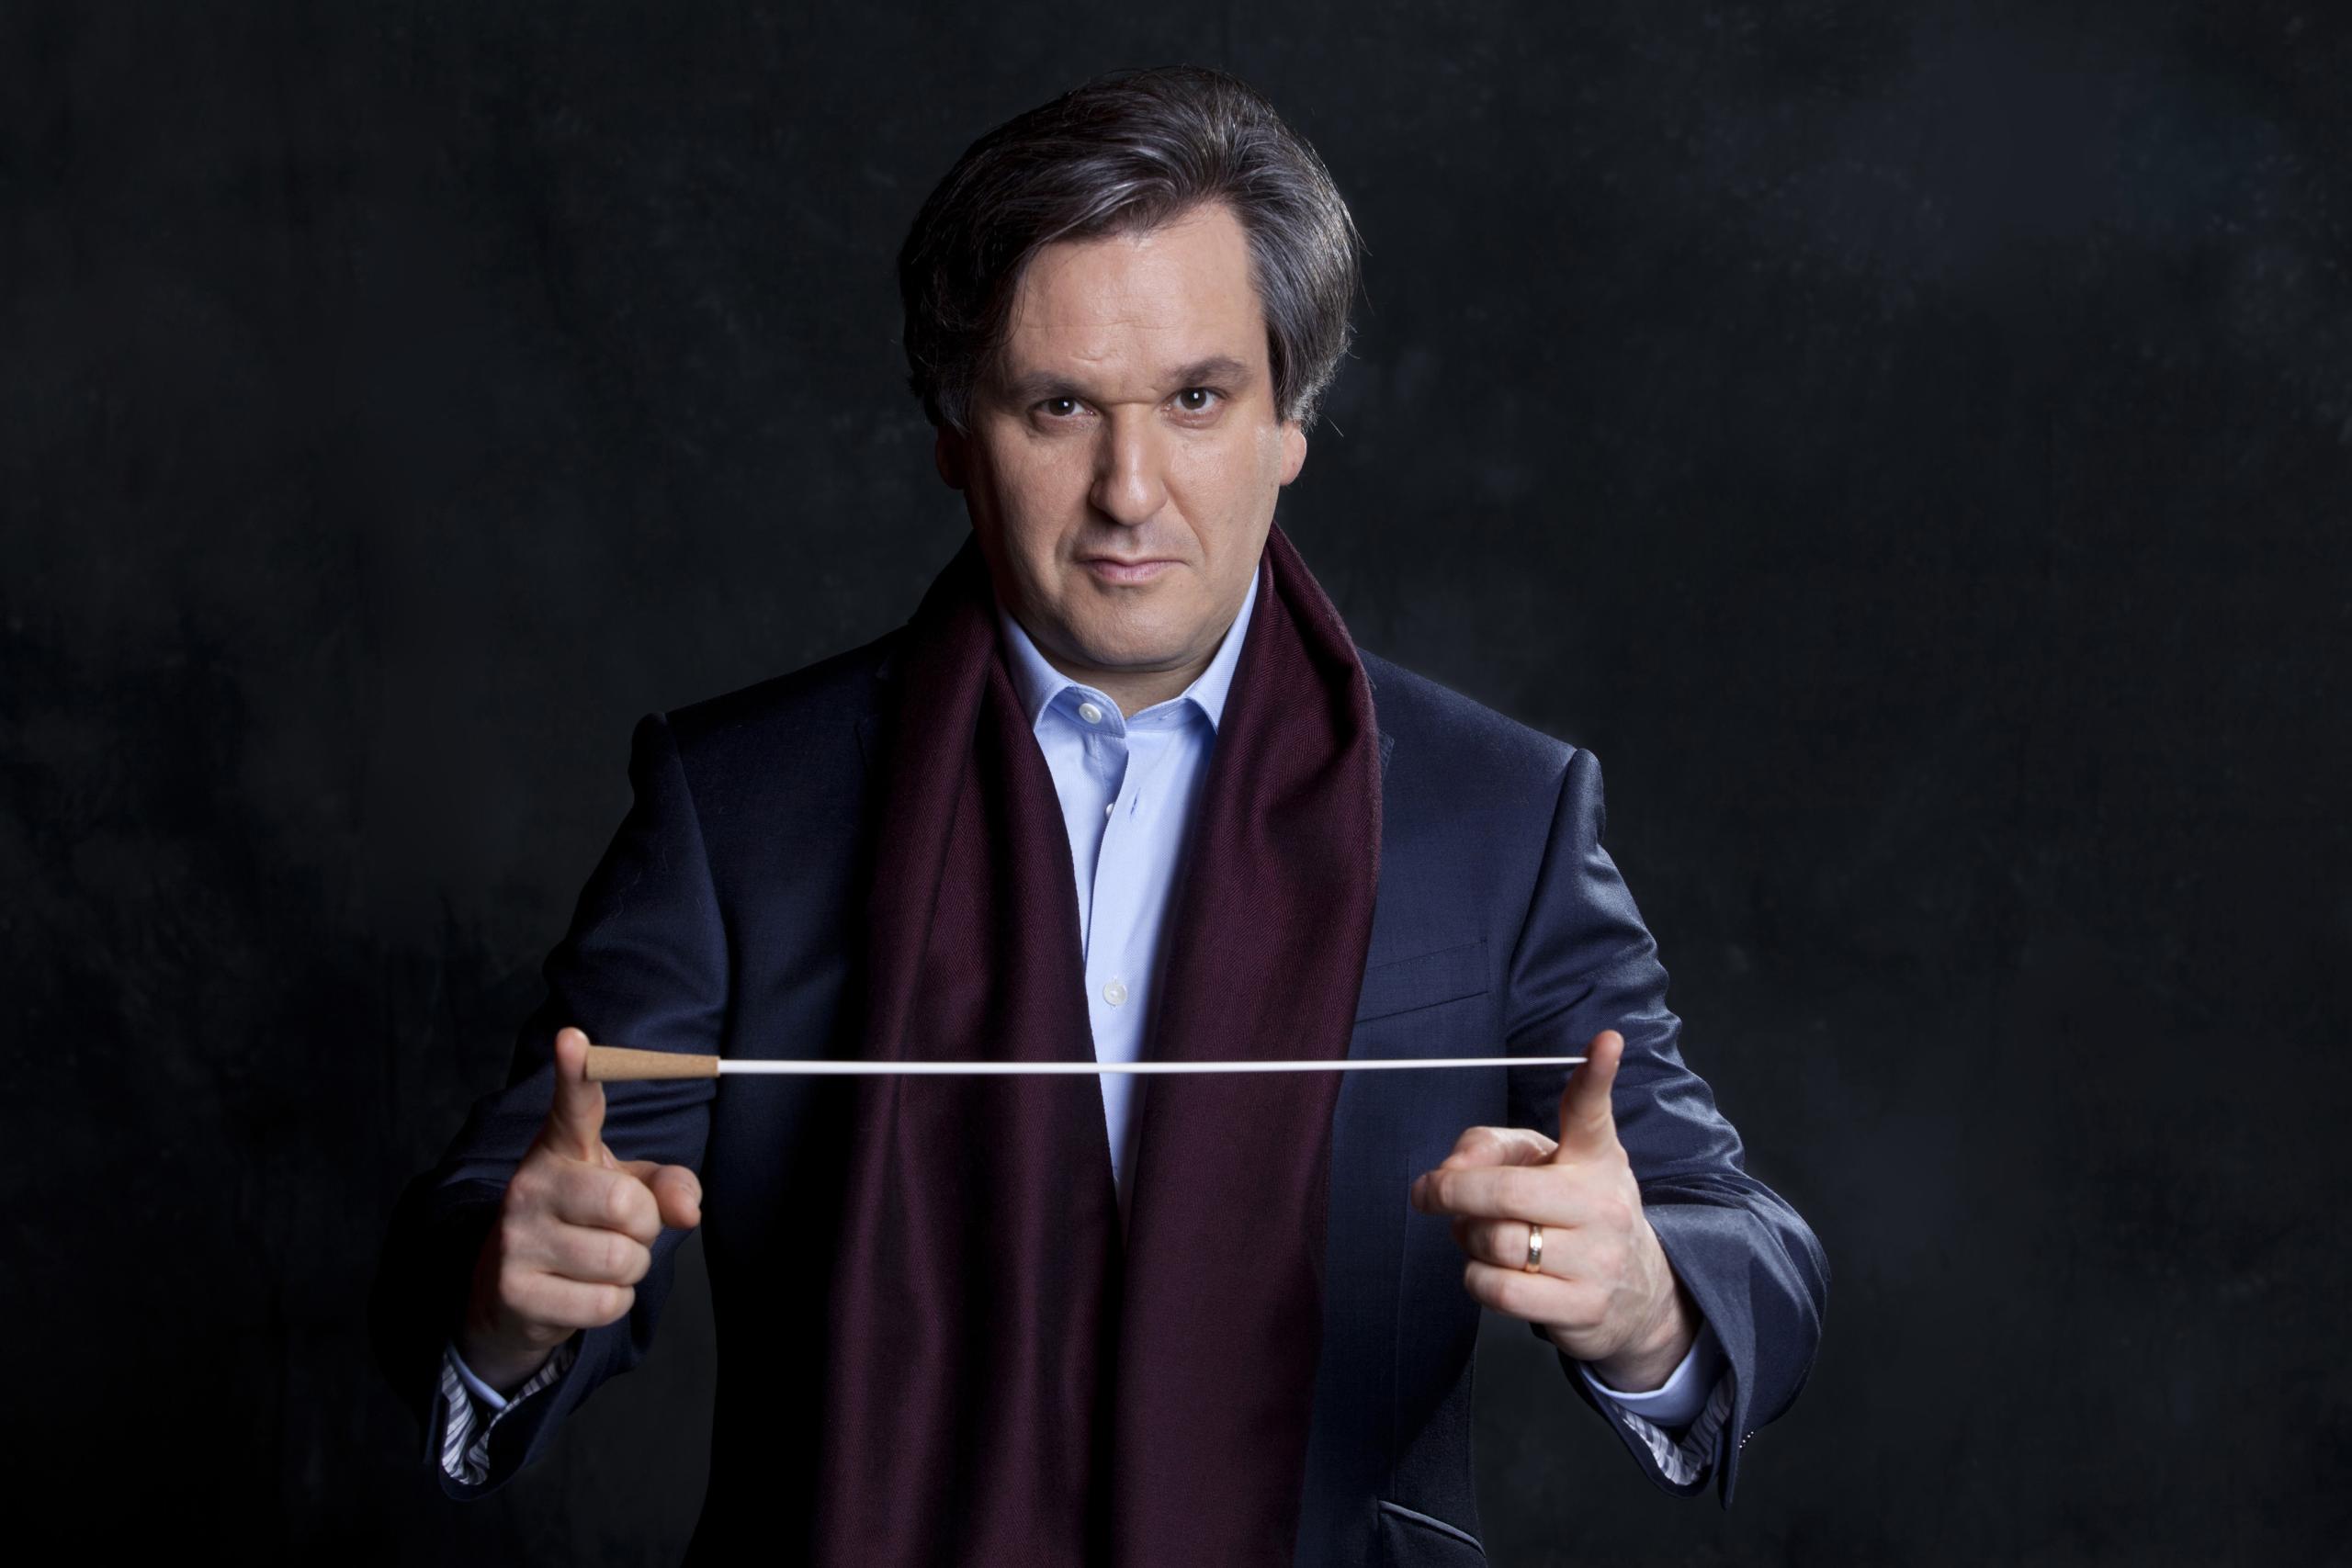 Der Dirigent präsentiert seinen Stab. Er steht vor einem dunklen Hintergrund, trägt einen blauen Anzug und einen weinroten Schal.